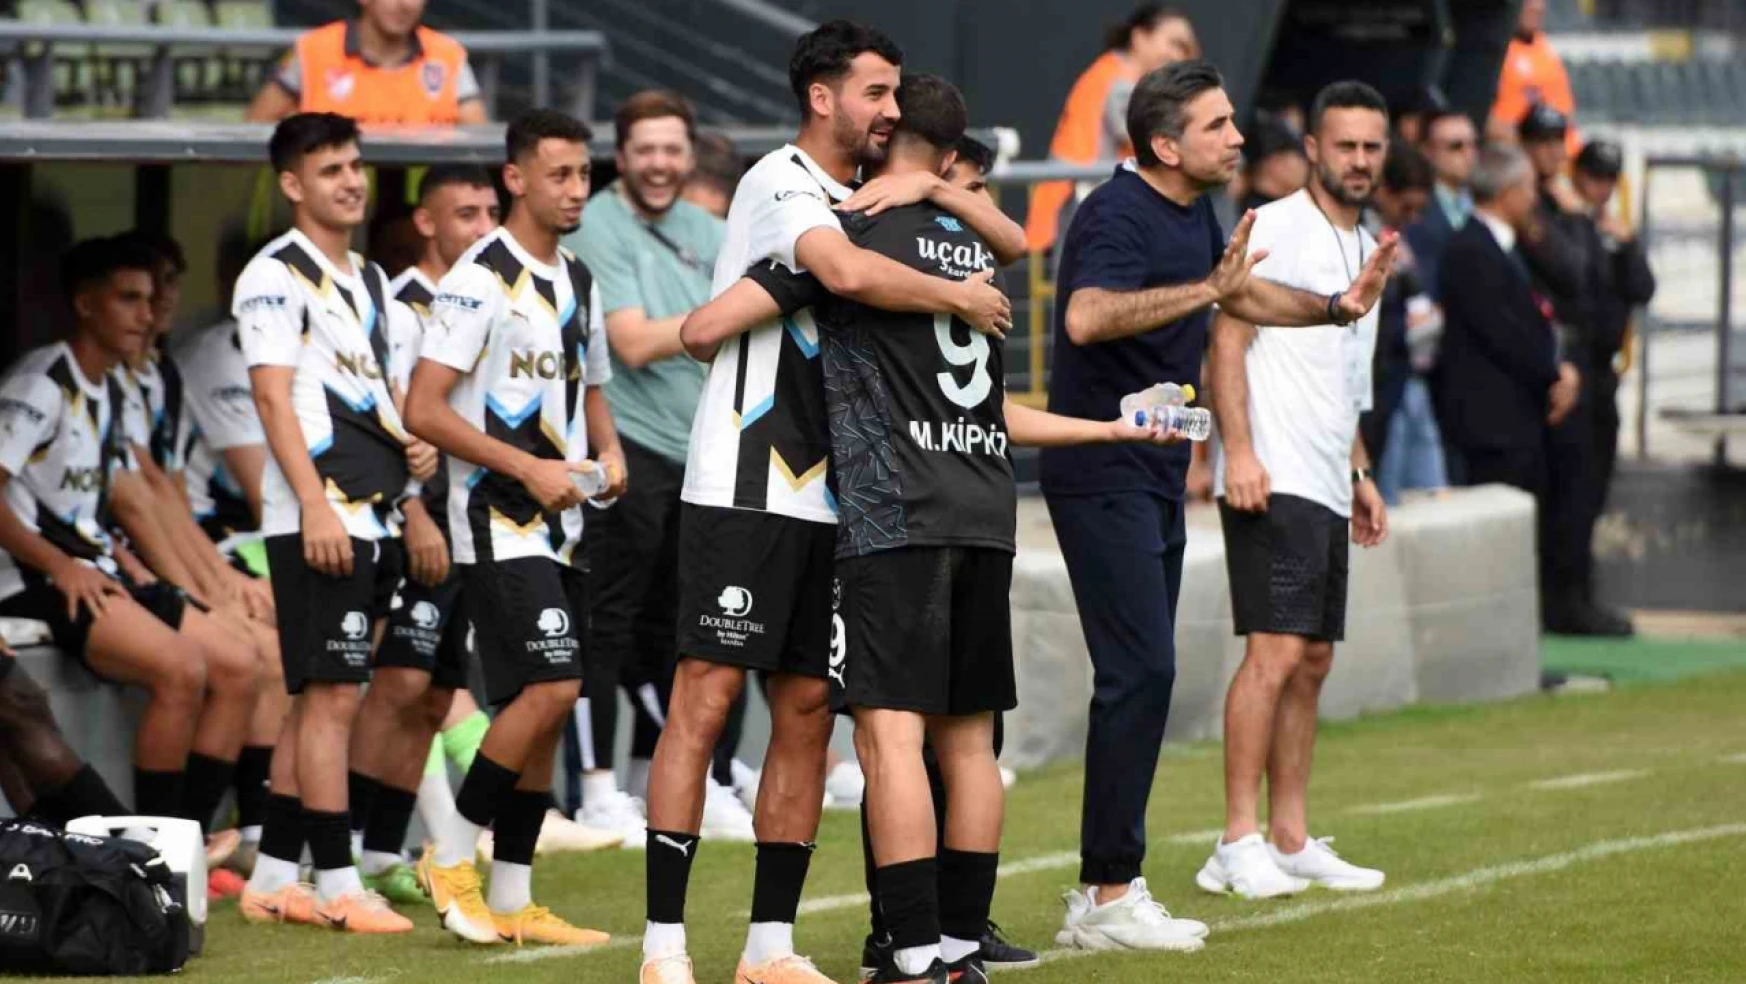 Ziraat Türkiye Kupası: Manisa FK: 3 - Pazarspor: 0